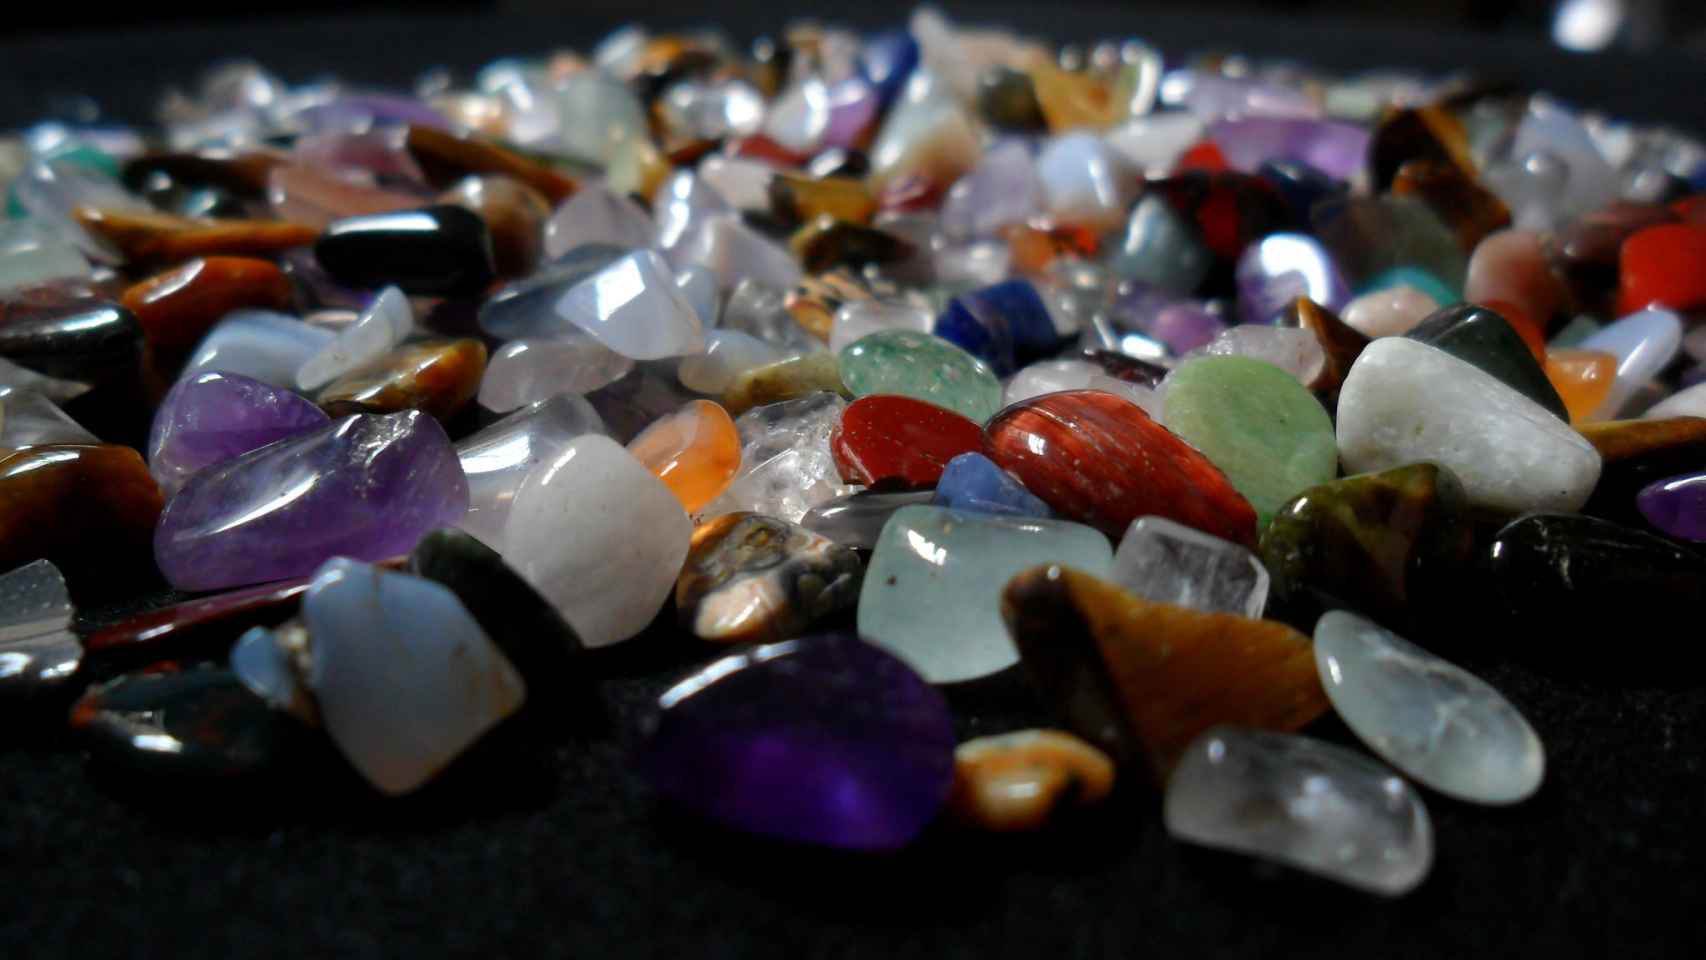 Cristales y piedras curativas: Desde los cristales, minerales y